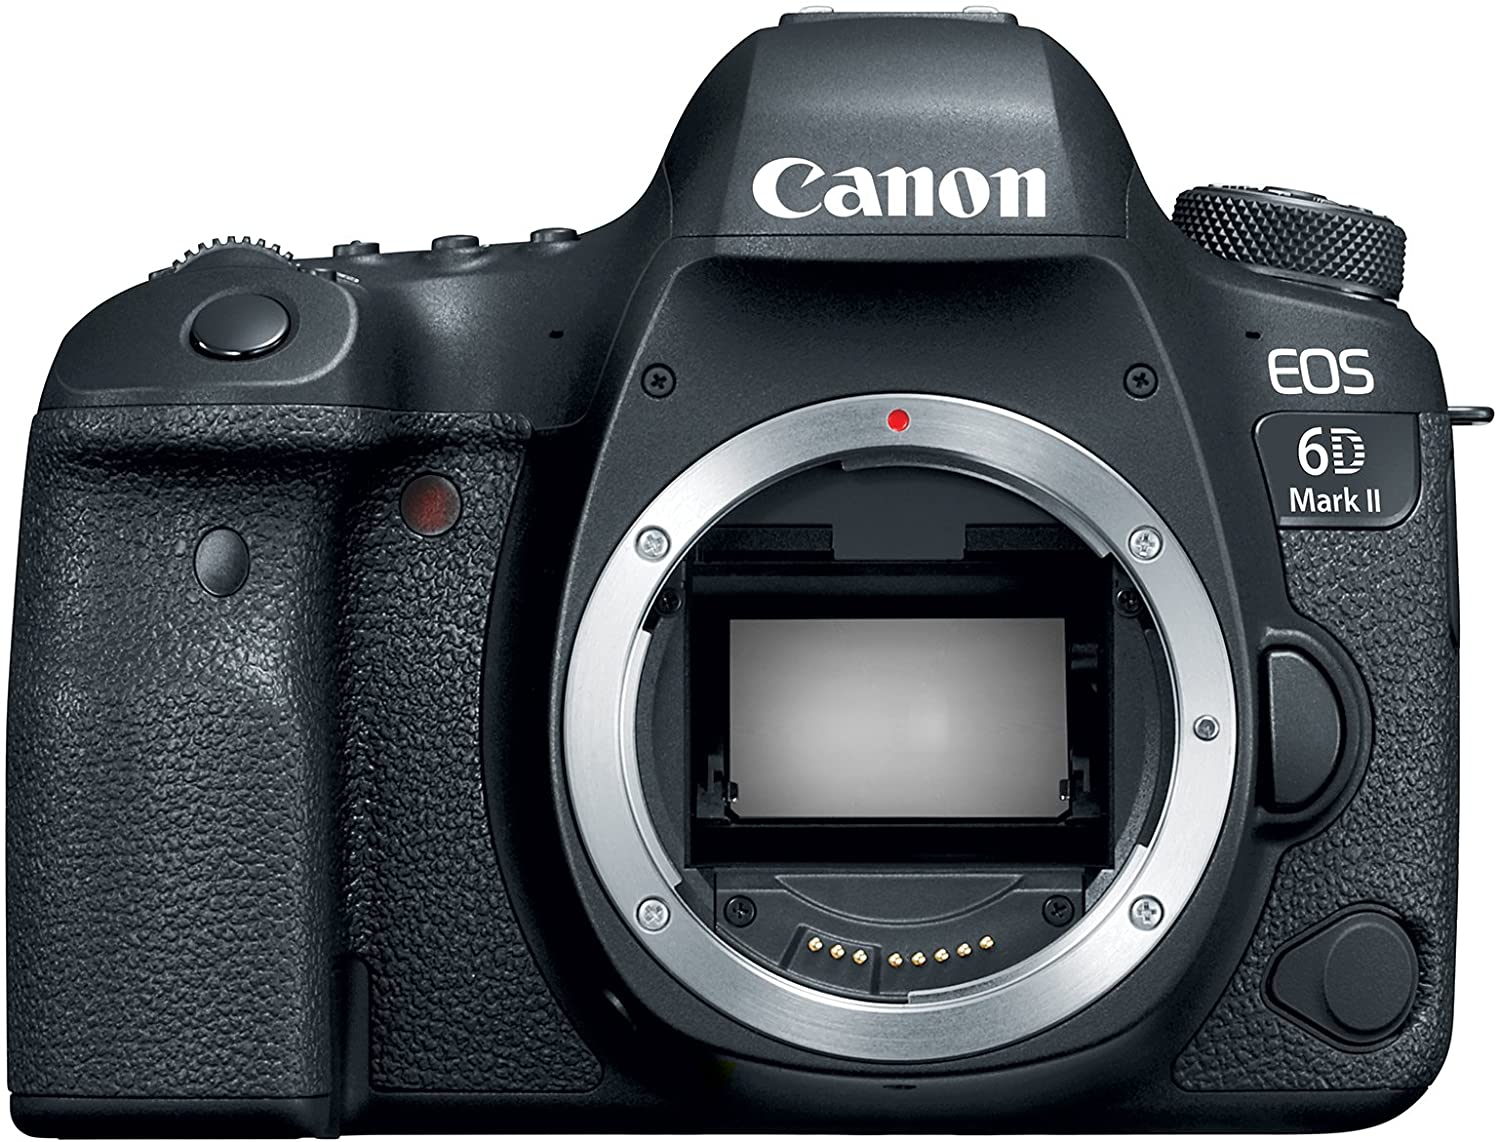 Dòng sản phẩm Canon 6D là dòng máy ảnh DSLR chụp ảnh du lịch khá được yêu thích